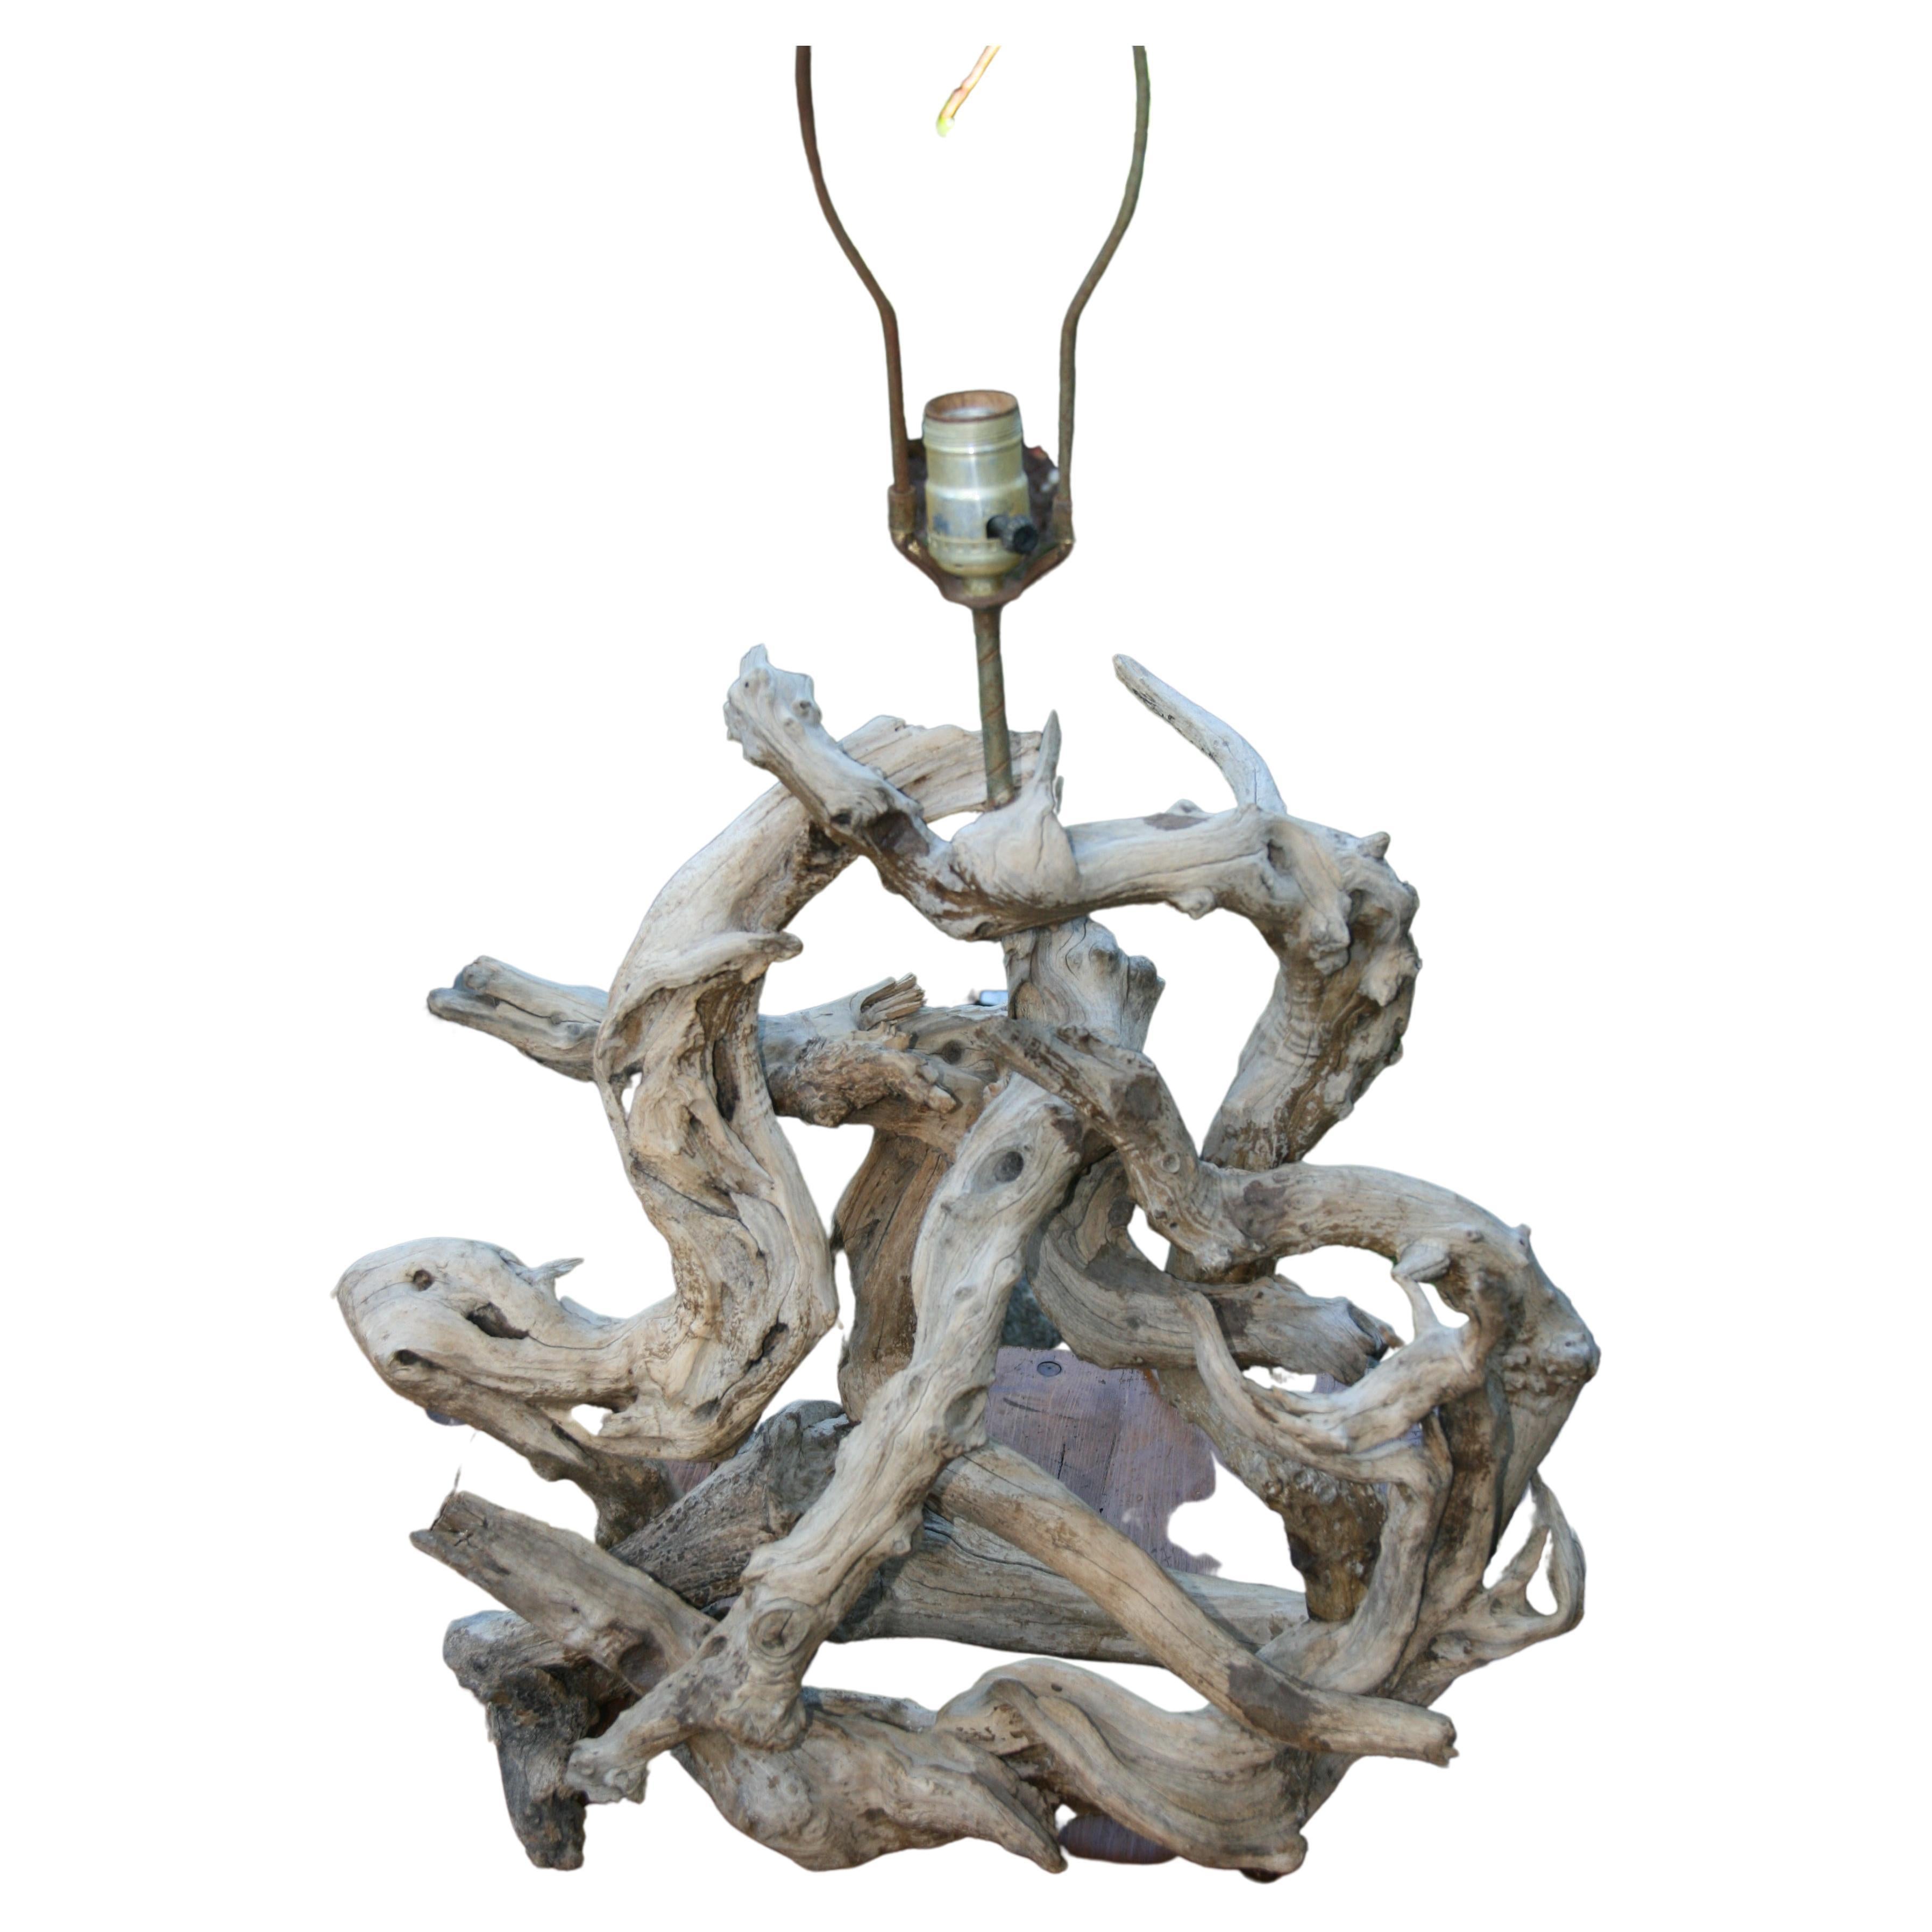 3-1120 Lampe aus natürlichem Treibholz, geformt von den Winden und dem Wasser des Meeres.
Originalverdrahtung in funktionierendem Zustand. Der Draht wurde durch das Holz gebohrt.
Höhe bis zur Oberkante des Sockels 23